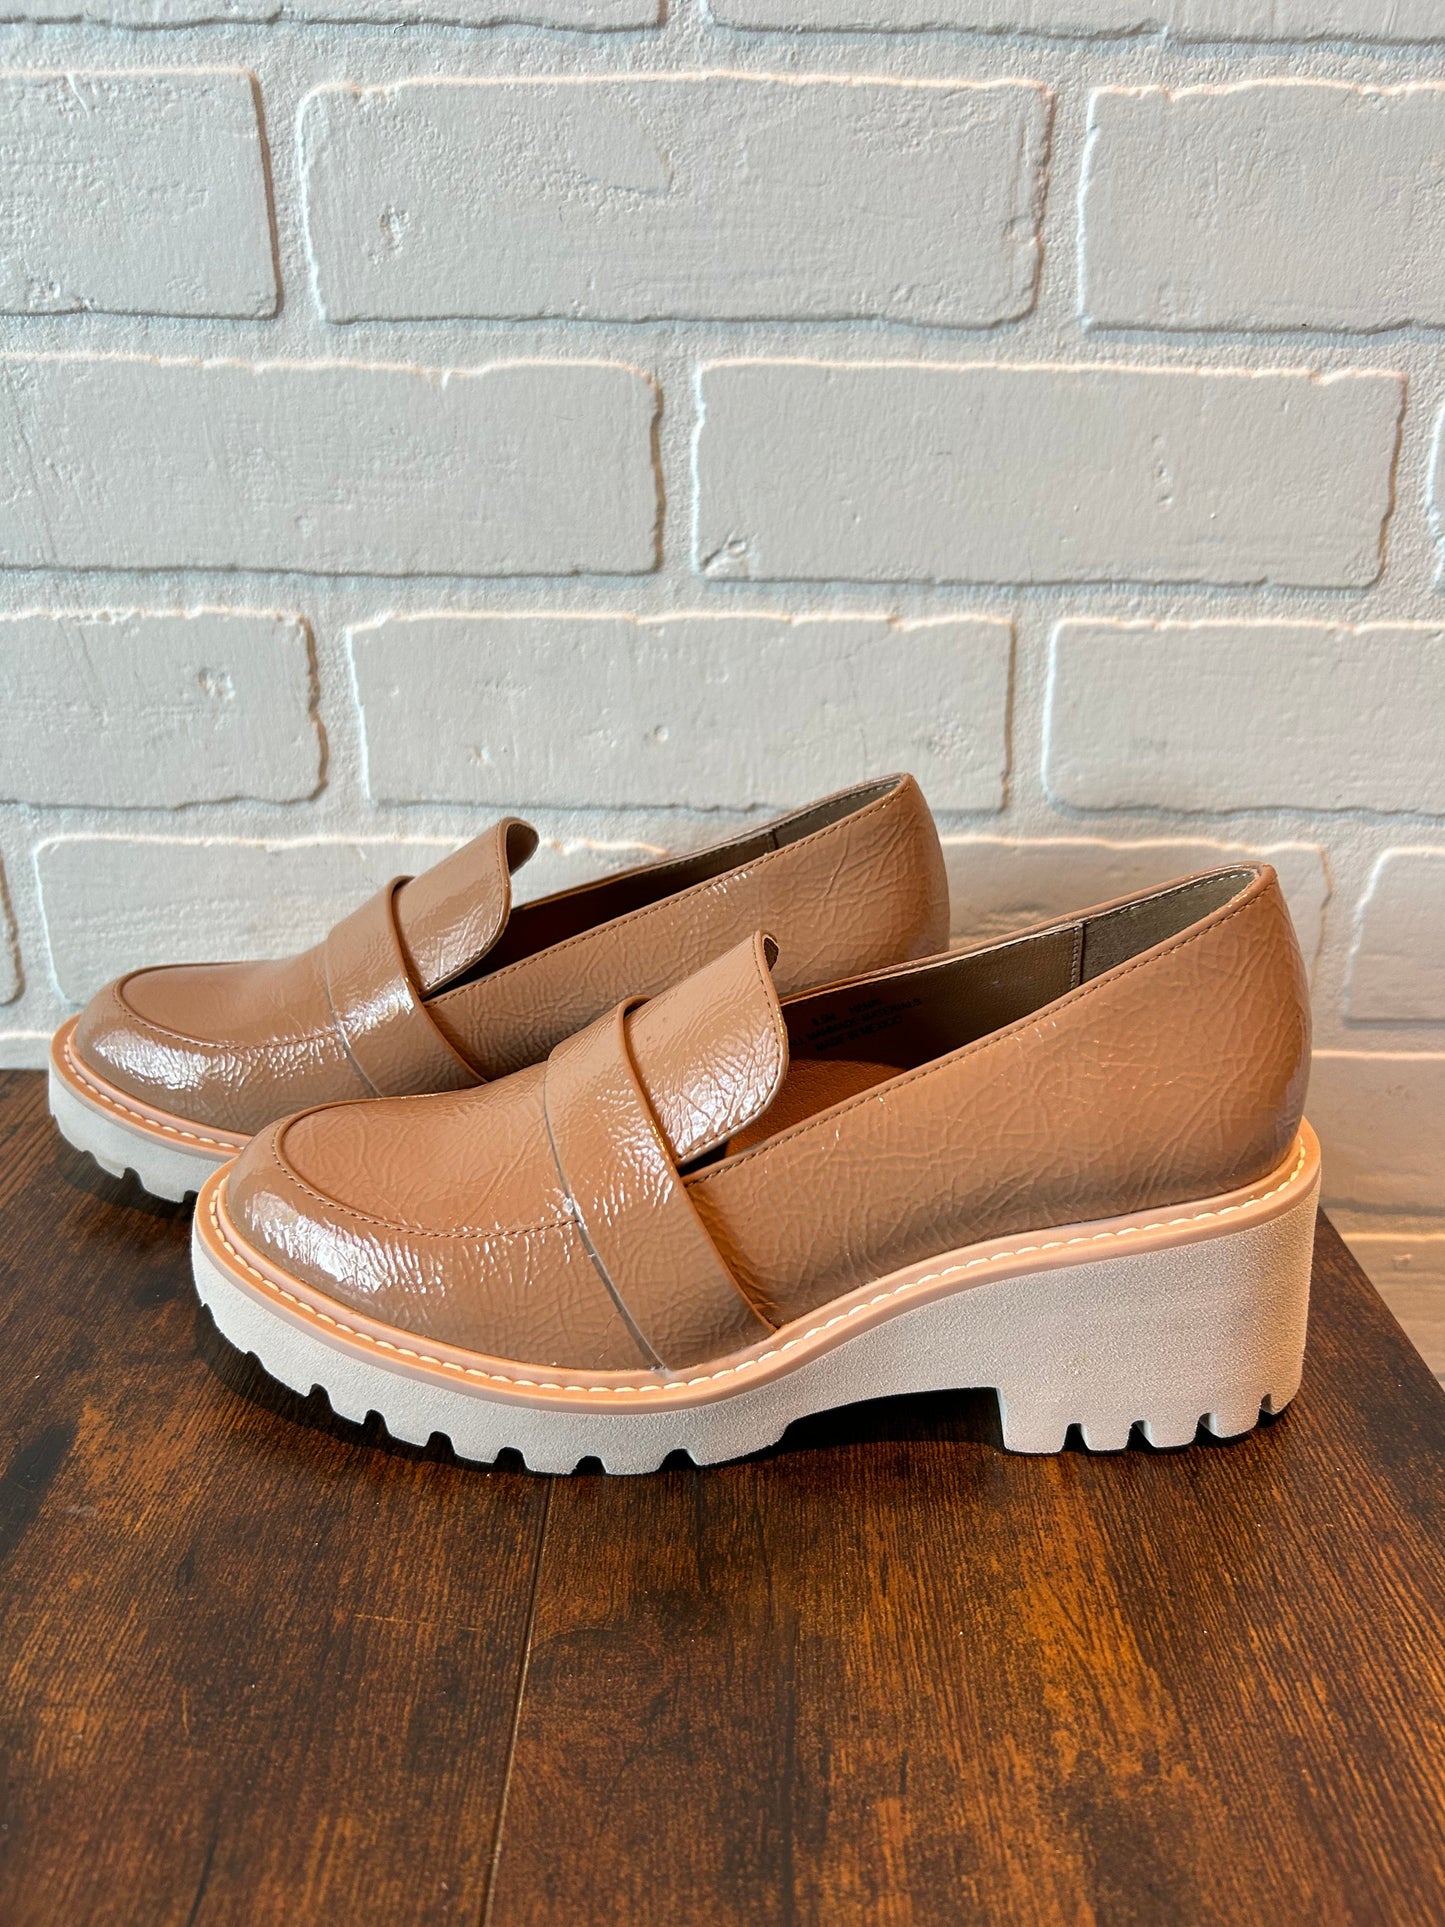 Tan Shoes Flats Dolce Vita, Size 6.5